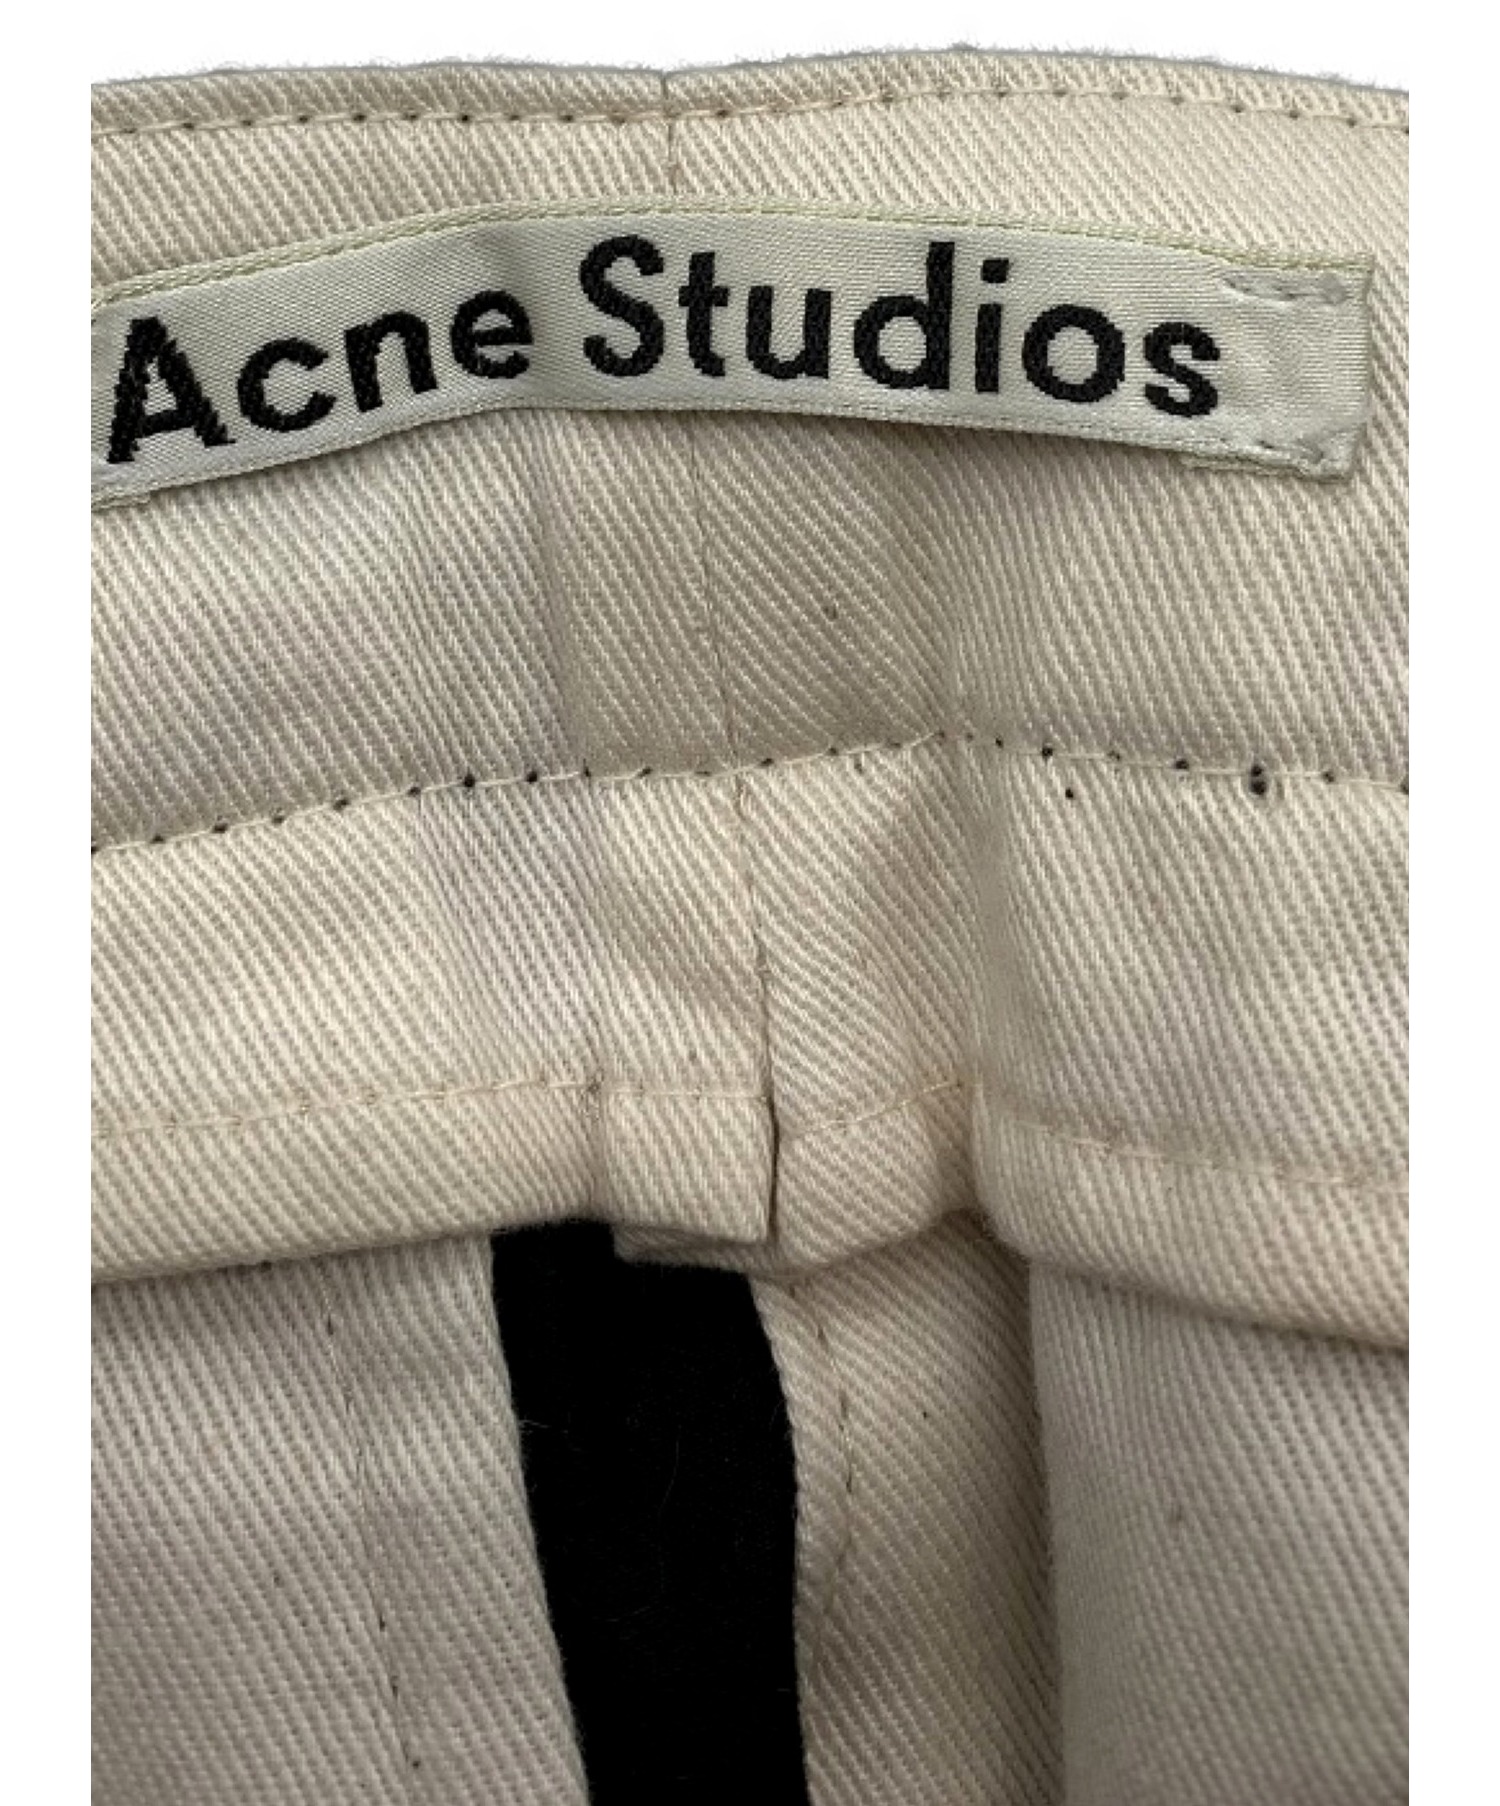 Acne studios (アクネストゥディオズ) コットンスラックスパンツ ブラック サイズ:SIZE 44